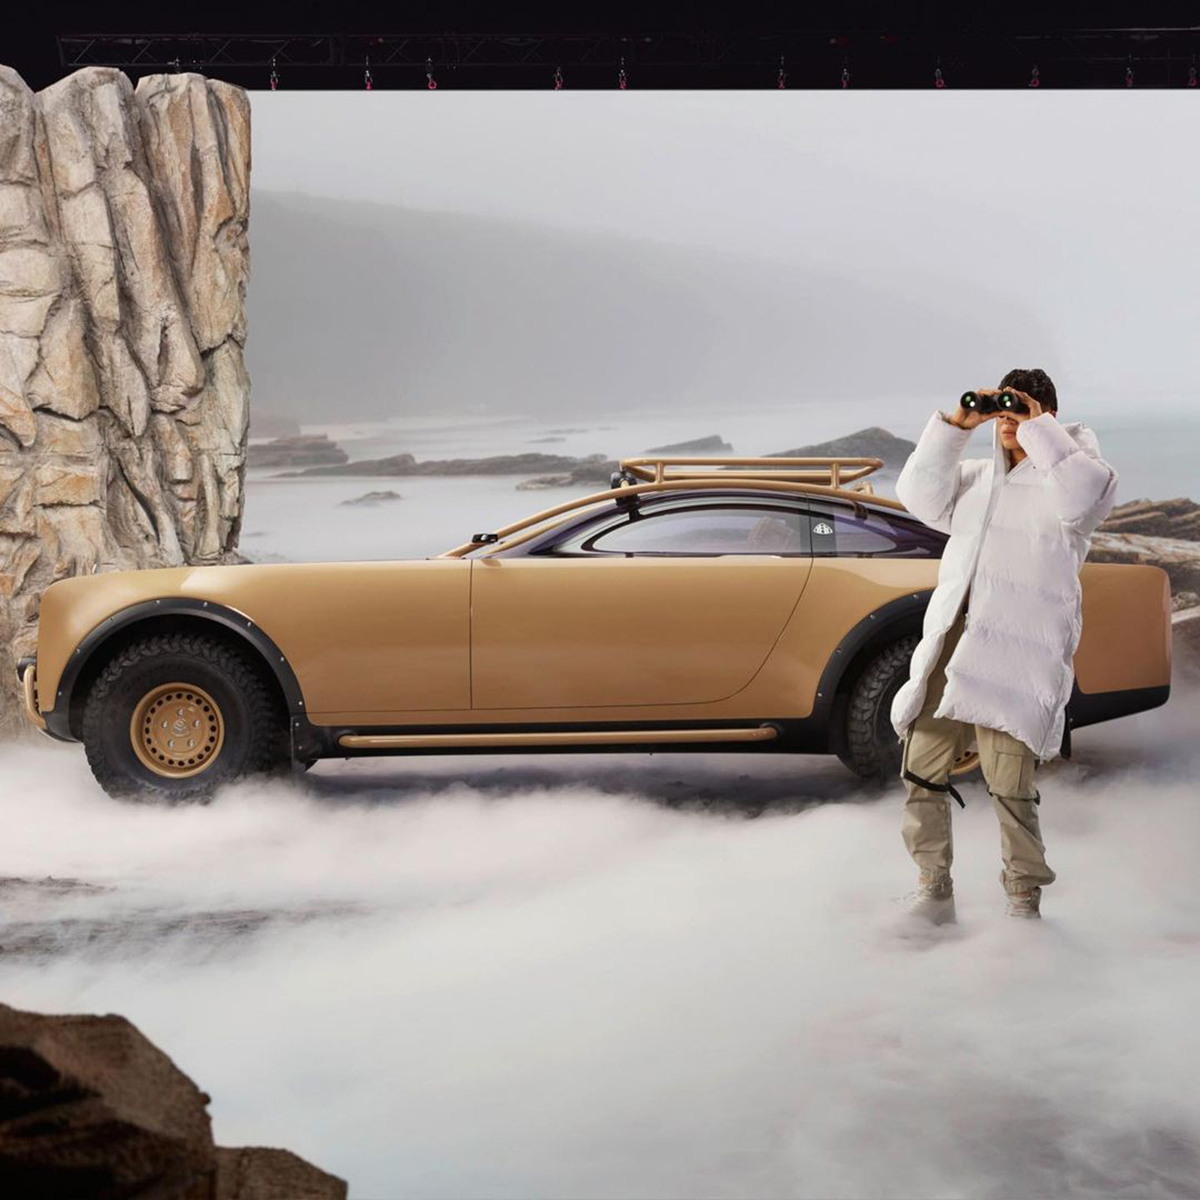 Mercedes-Maybach : l’ultime concept-car futuriste et solaire de Virgil Abloh ! (vidéo sur Bidfoly.com) Par Justine Mellado Maybach-mercedes-benz-virgil-abloh-4